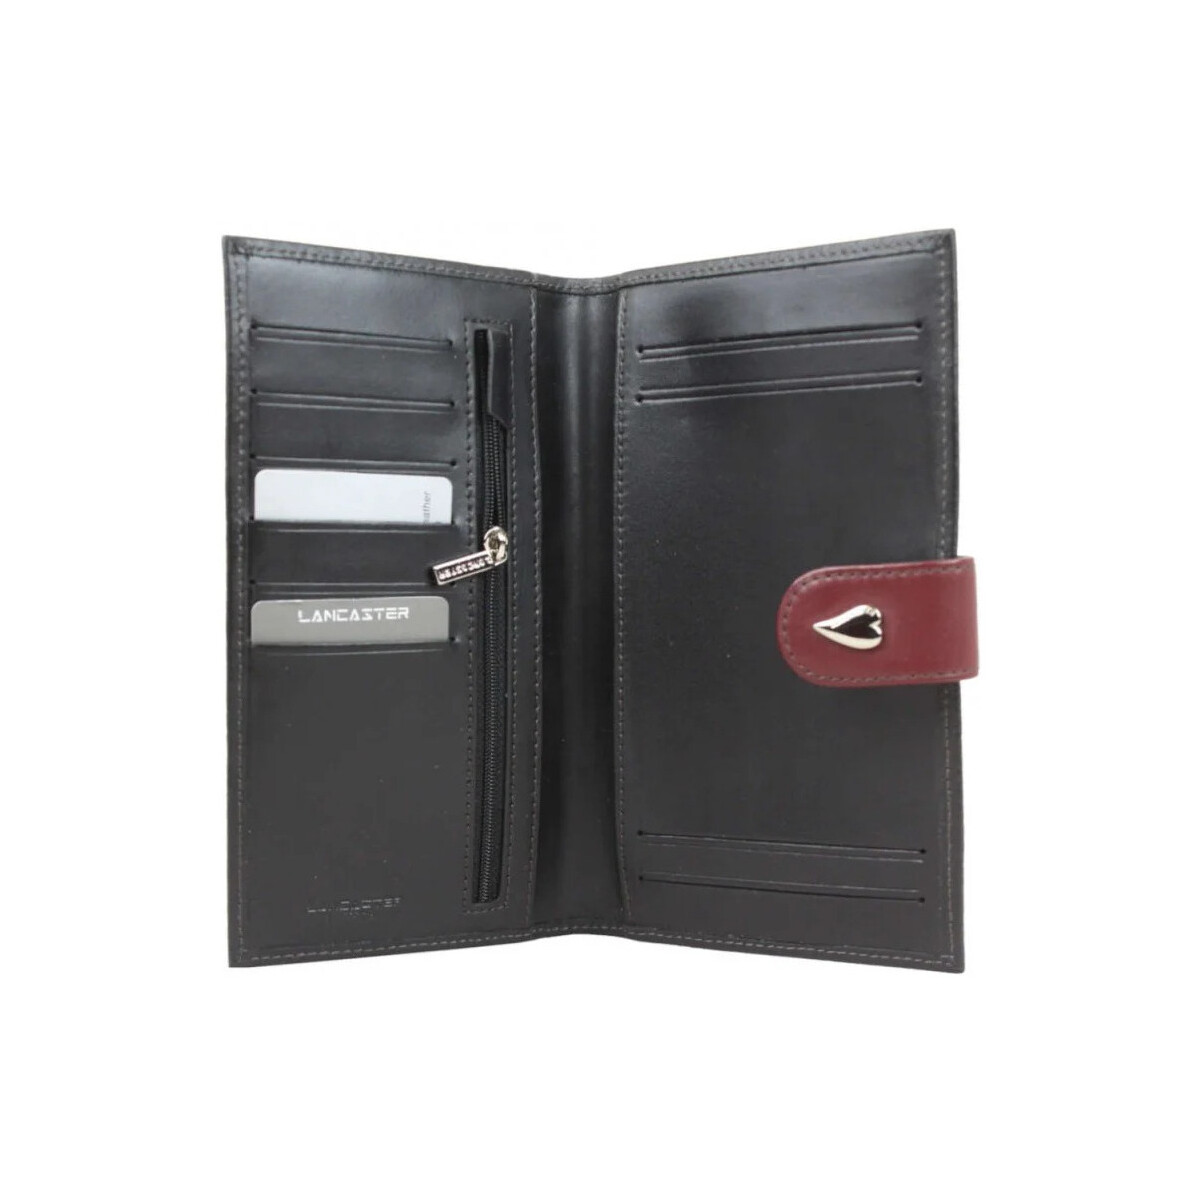 LANCASTER Multicolore Porte chéquier en cuir lisse 193016 noir / bordeaux l6bUSKol